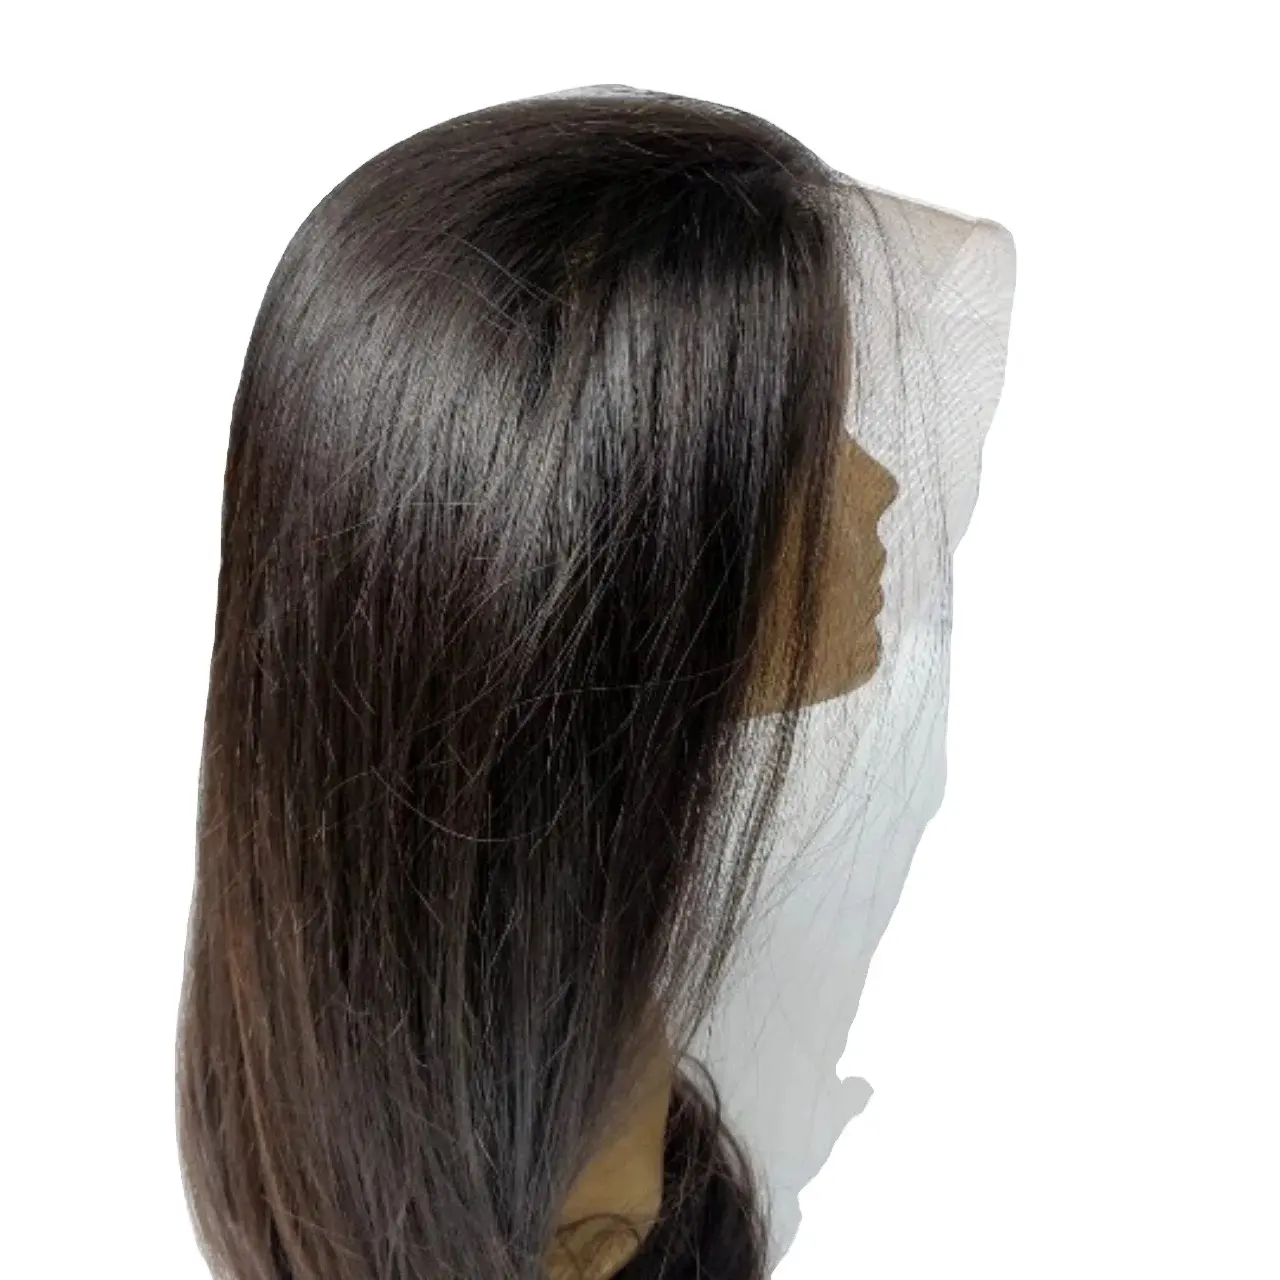 Оптовая продажа, 100% вьетнамские человеческие волосы натурального цвета, прямой черный парик из кости, натуральные волосы, не гениальные волосы, Длина 8 - 32 дюйма